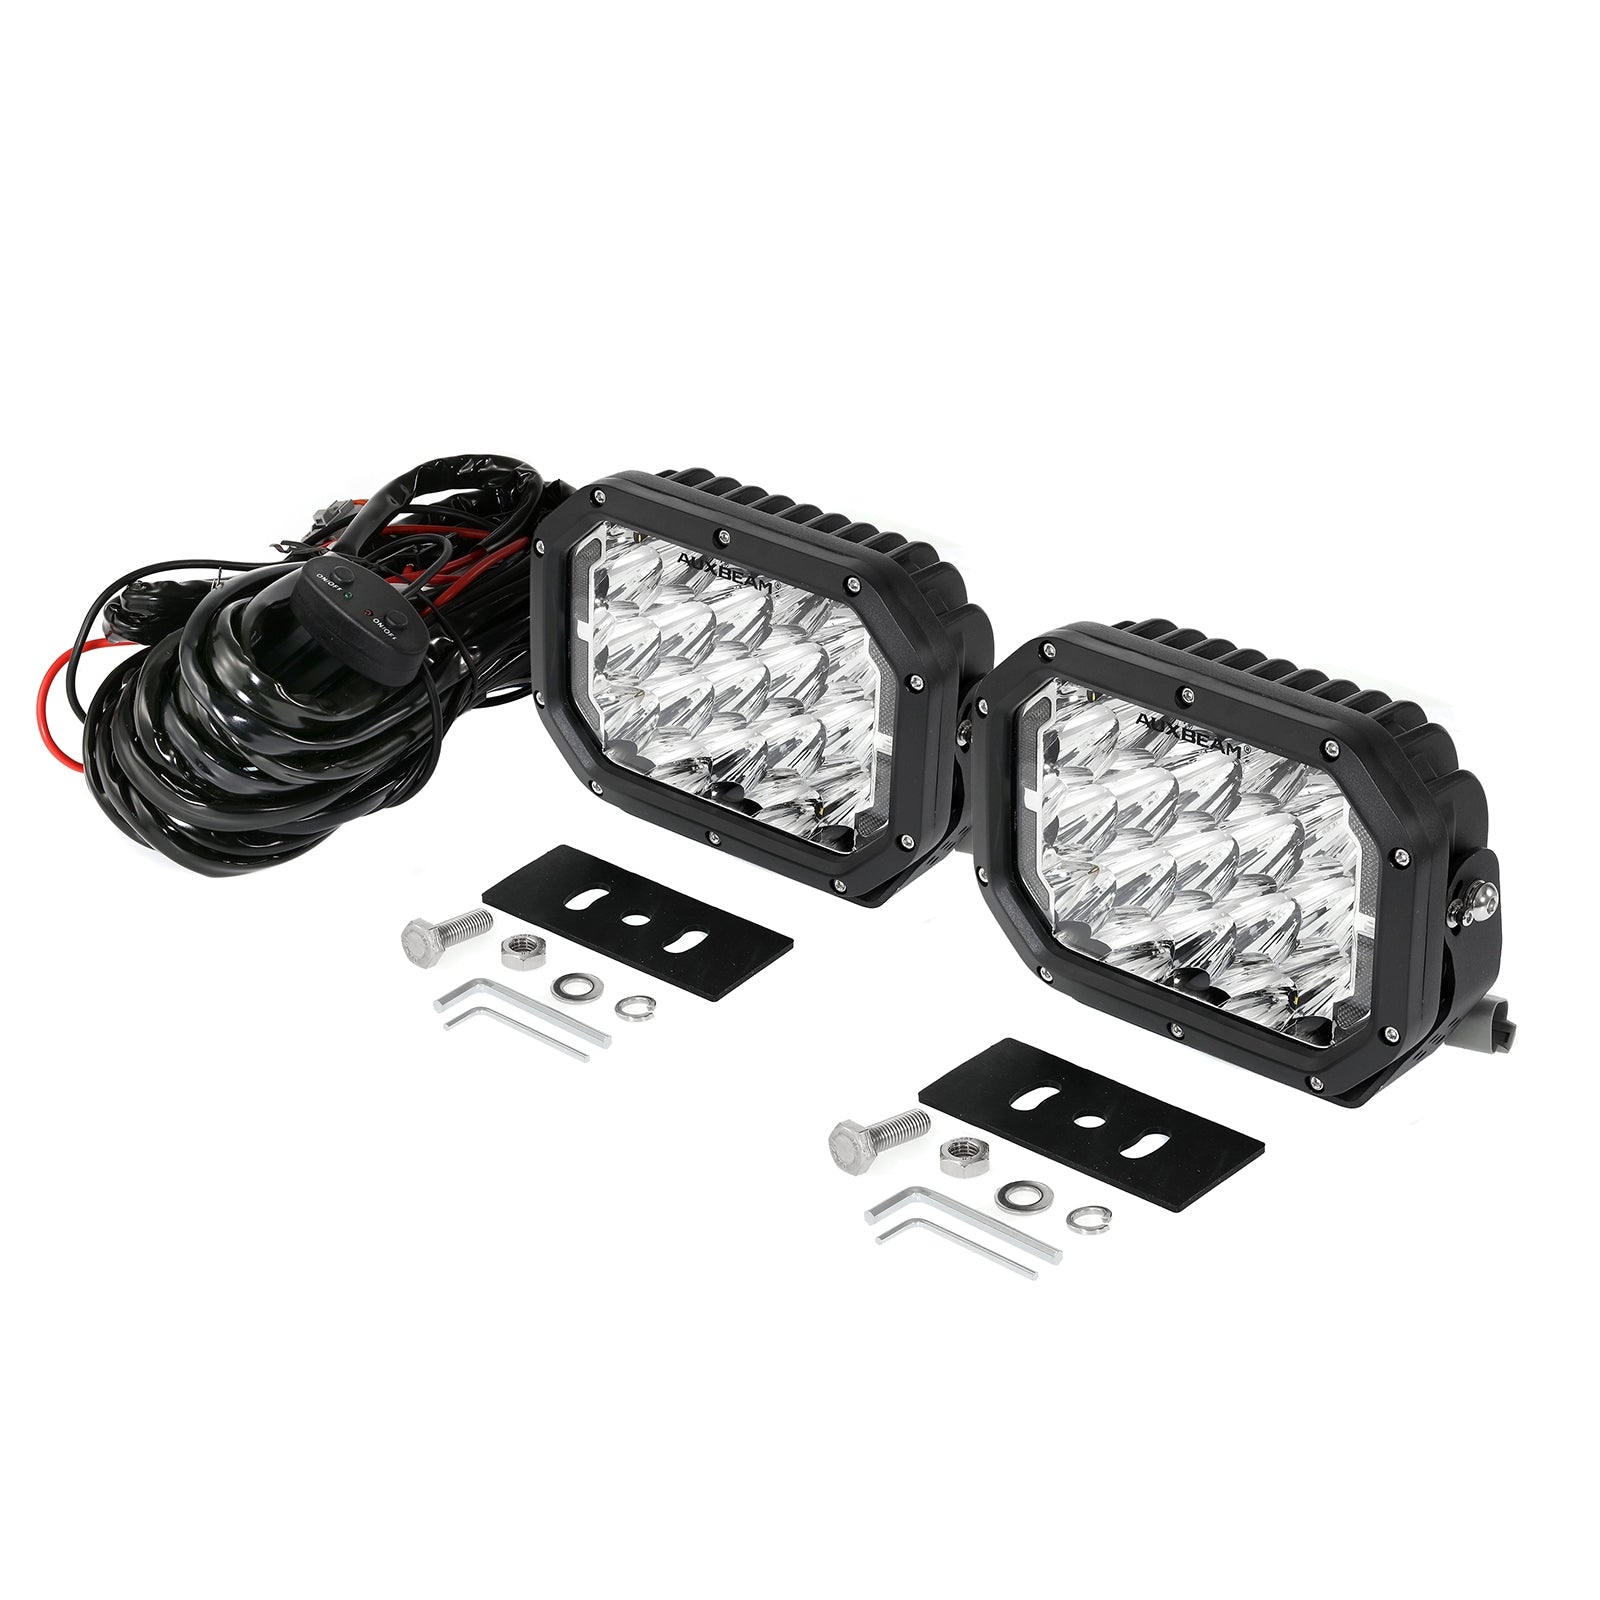 LED-Arbeitsscheinwerfer Osram LEDinspect, 500lm - LEDIL405 - Pro Detailing